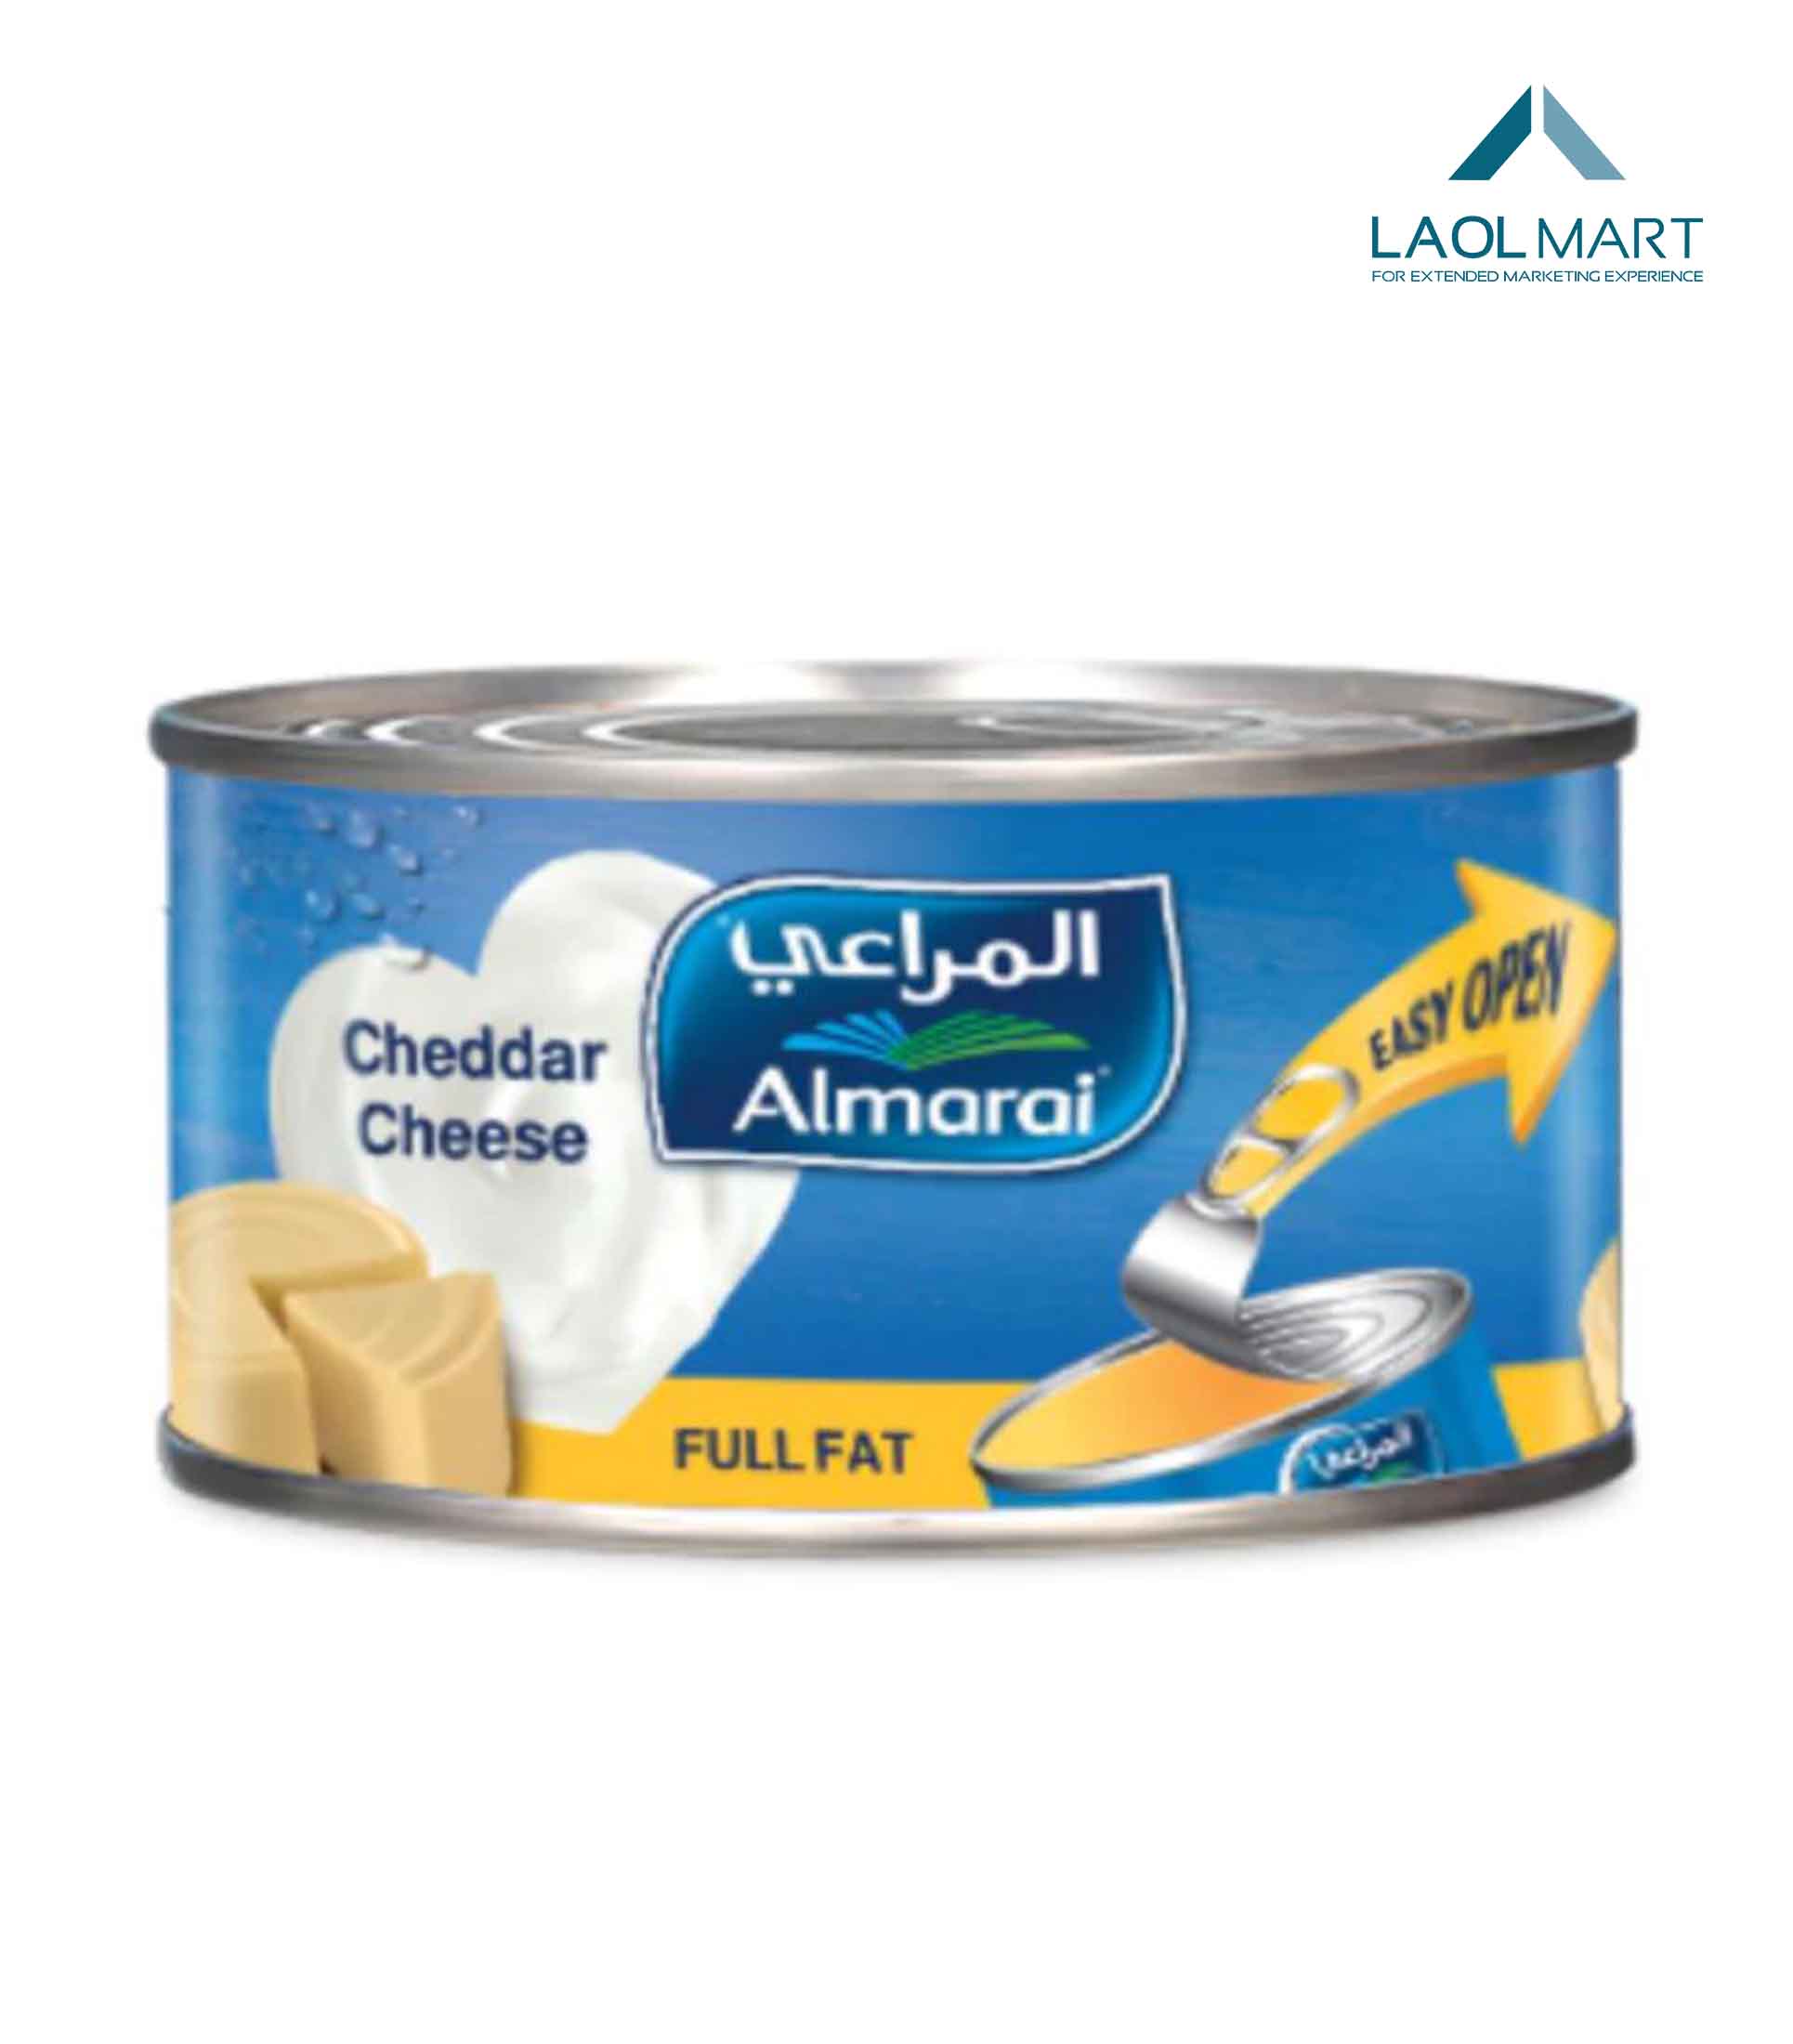 Almarai Cheddar Cheese 113g